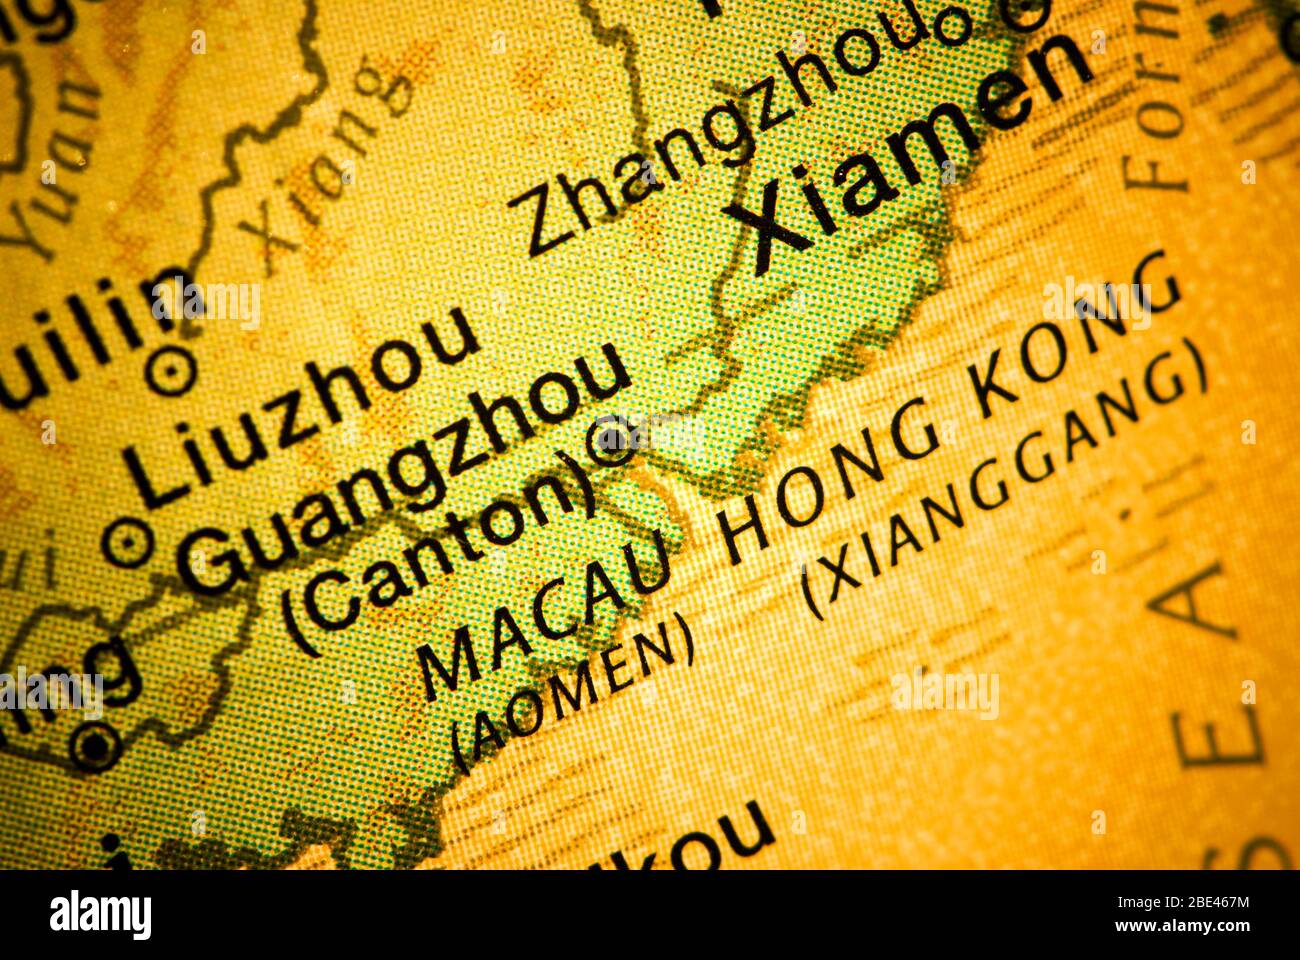 hongkong und macau / ein Land mit zwei Systemen / xianggang und aomen Stockfoto